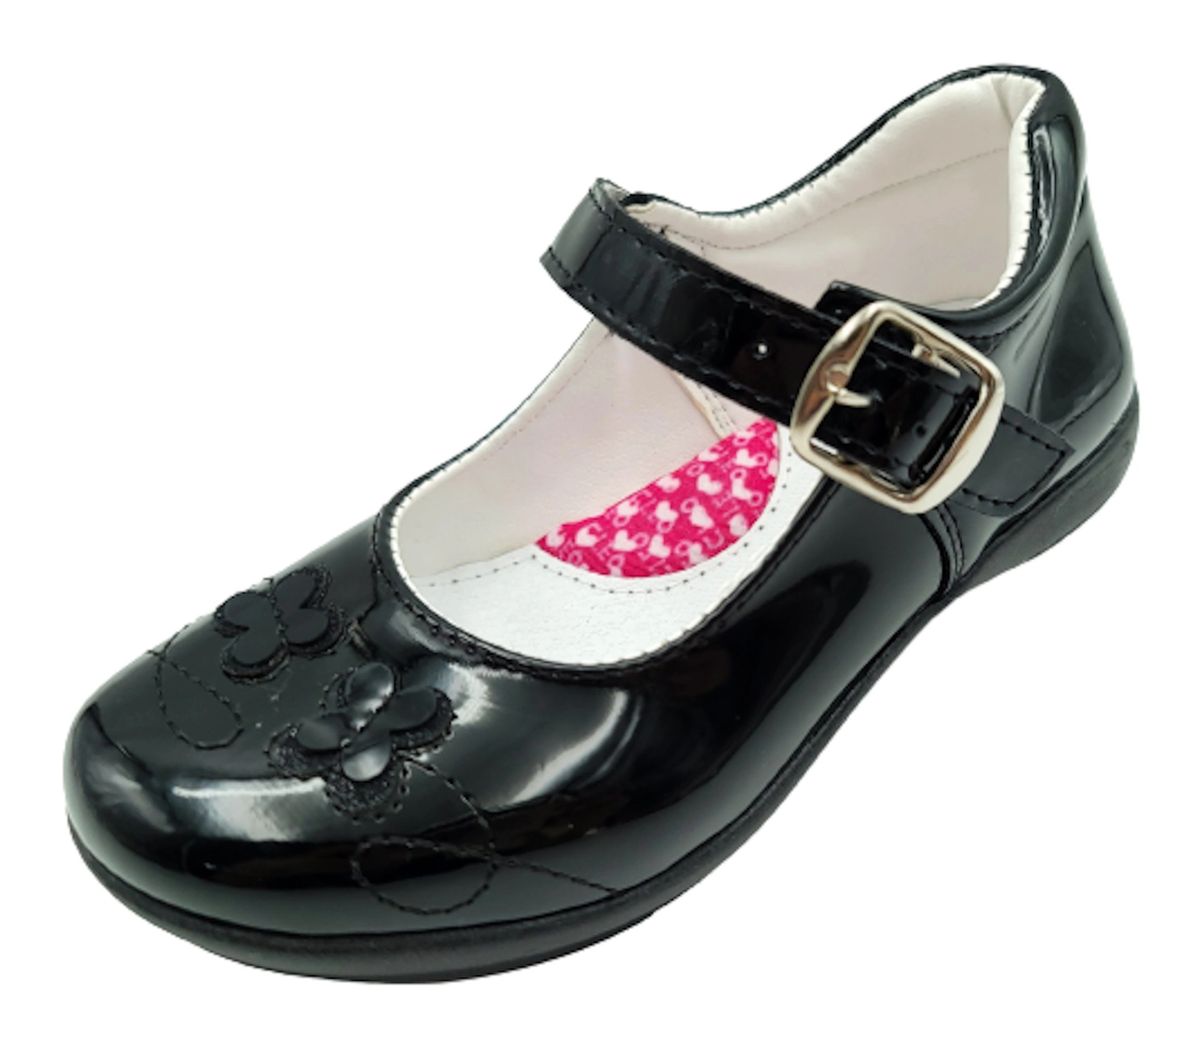 Zapatos Escolares Negros Flats Niña Balerinas Arco Soporte Cómodas Modernas  21-460